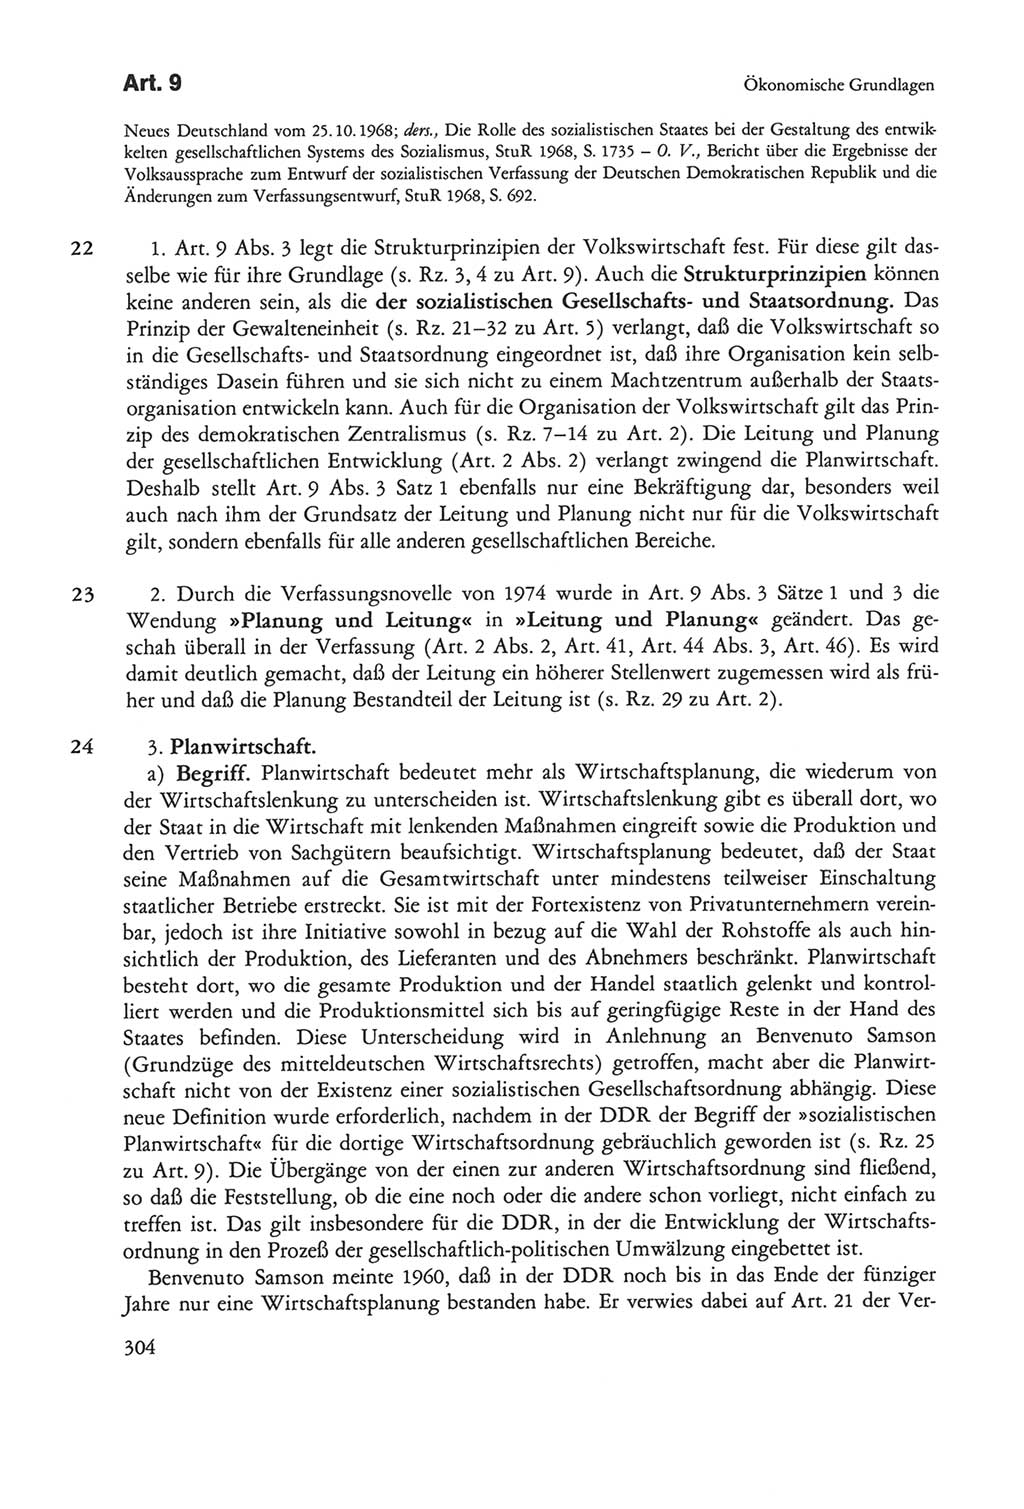 Die sozialistische Verfassung der Deutschen Demokratischen Republik (DDR), Kommentar mit einem Nachtrag 1997, Seite 304 (Soz. Verf. DDR Komm. Nachtr. 1997, S. 304)